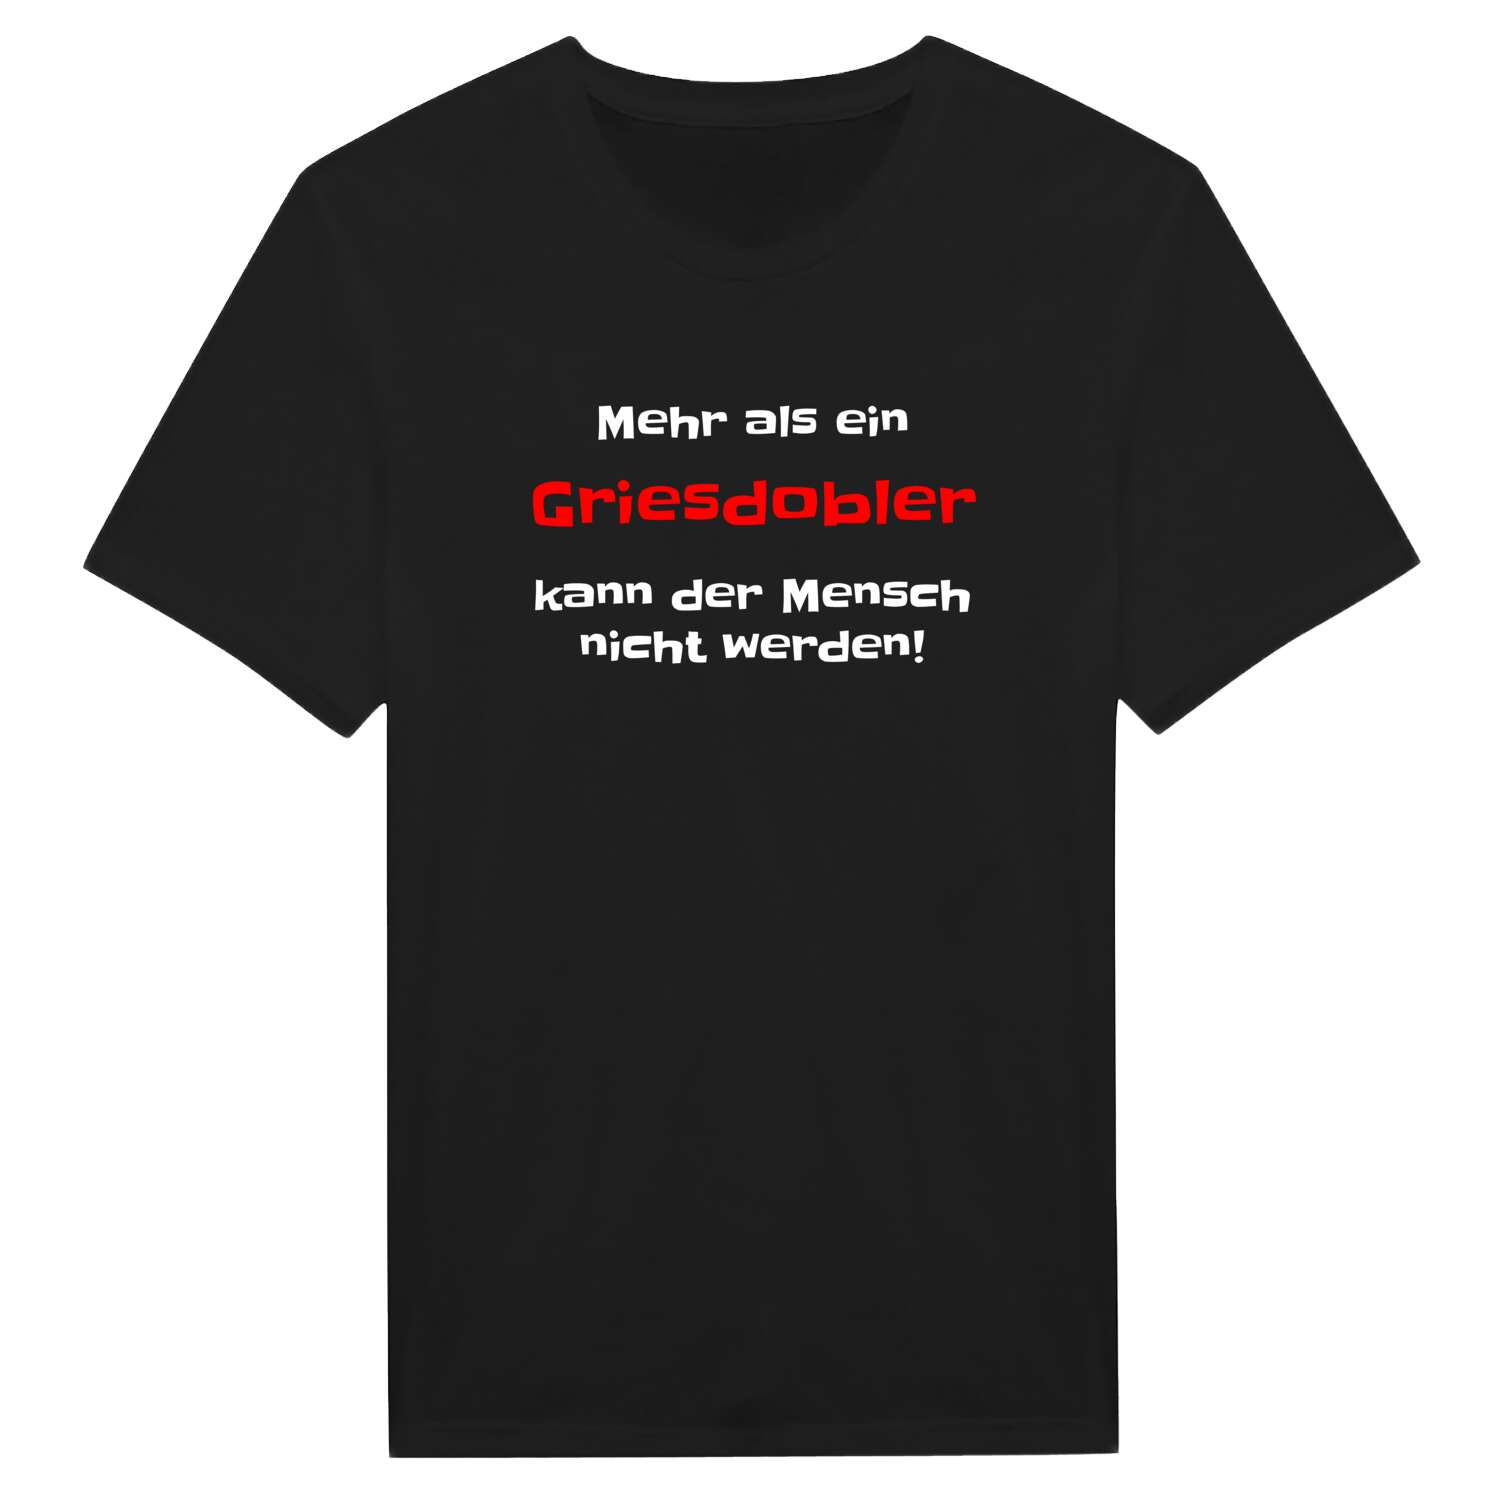 Griesdobl T-Shirt »Mehr als ein«